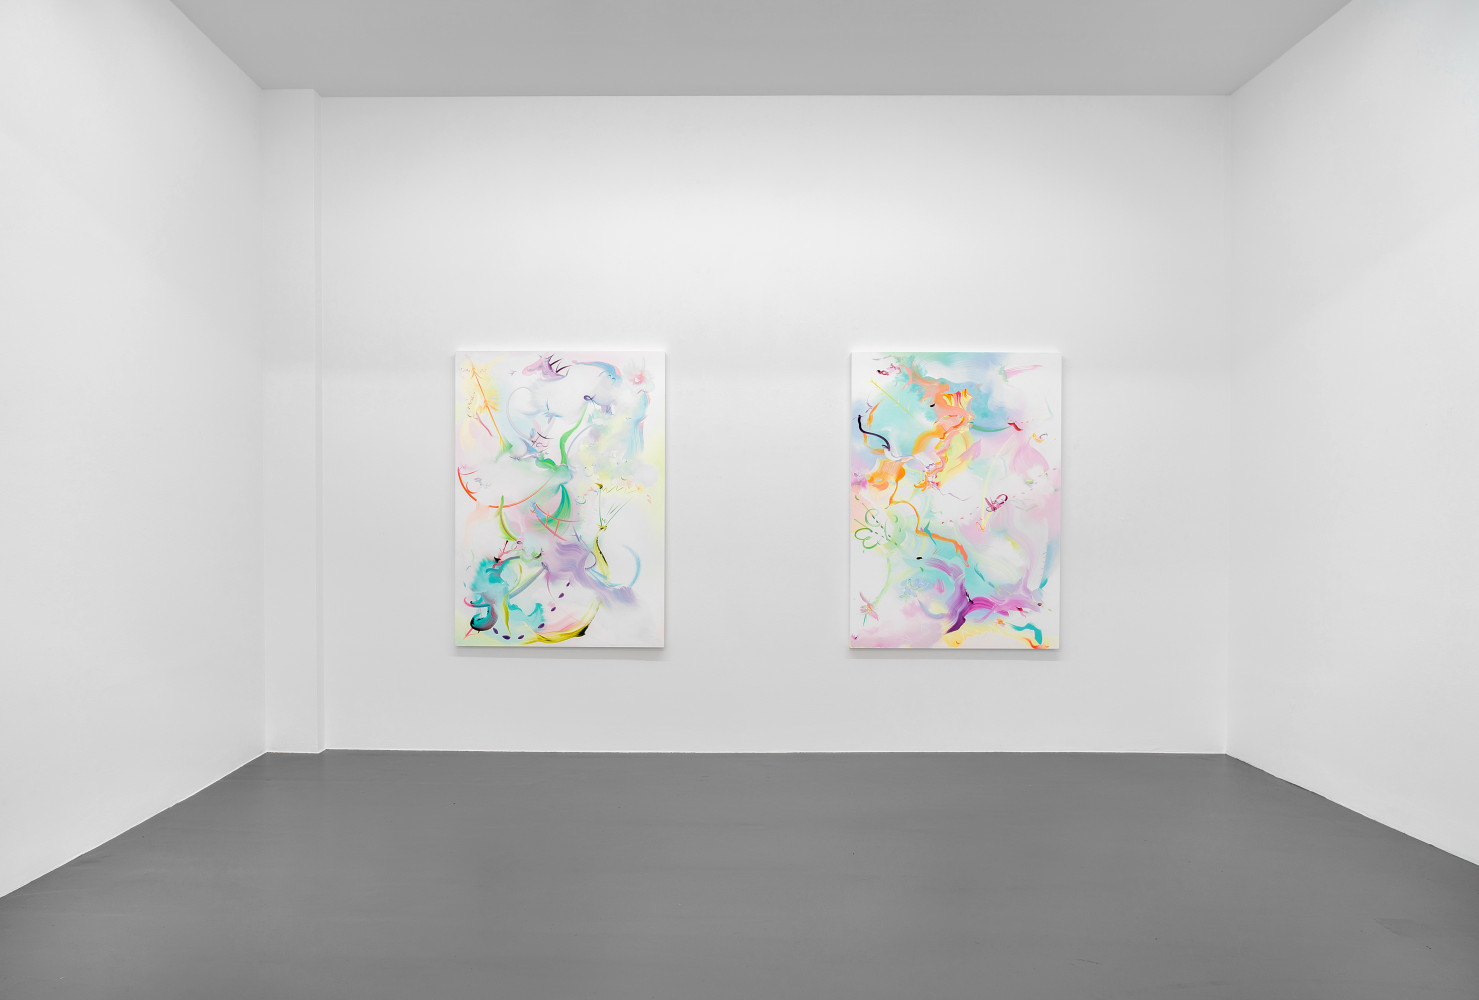 Fiona Rae, Installationsansicht, Buchmann Galerie, 2018